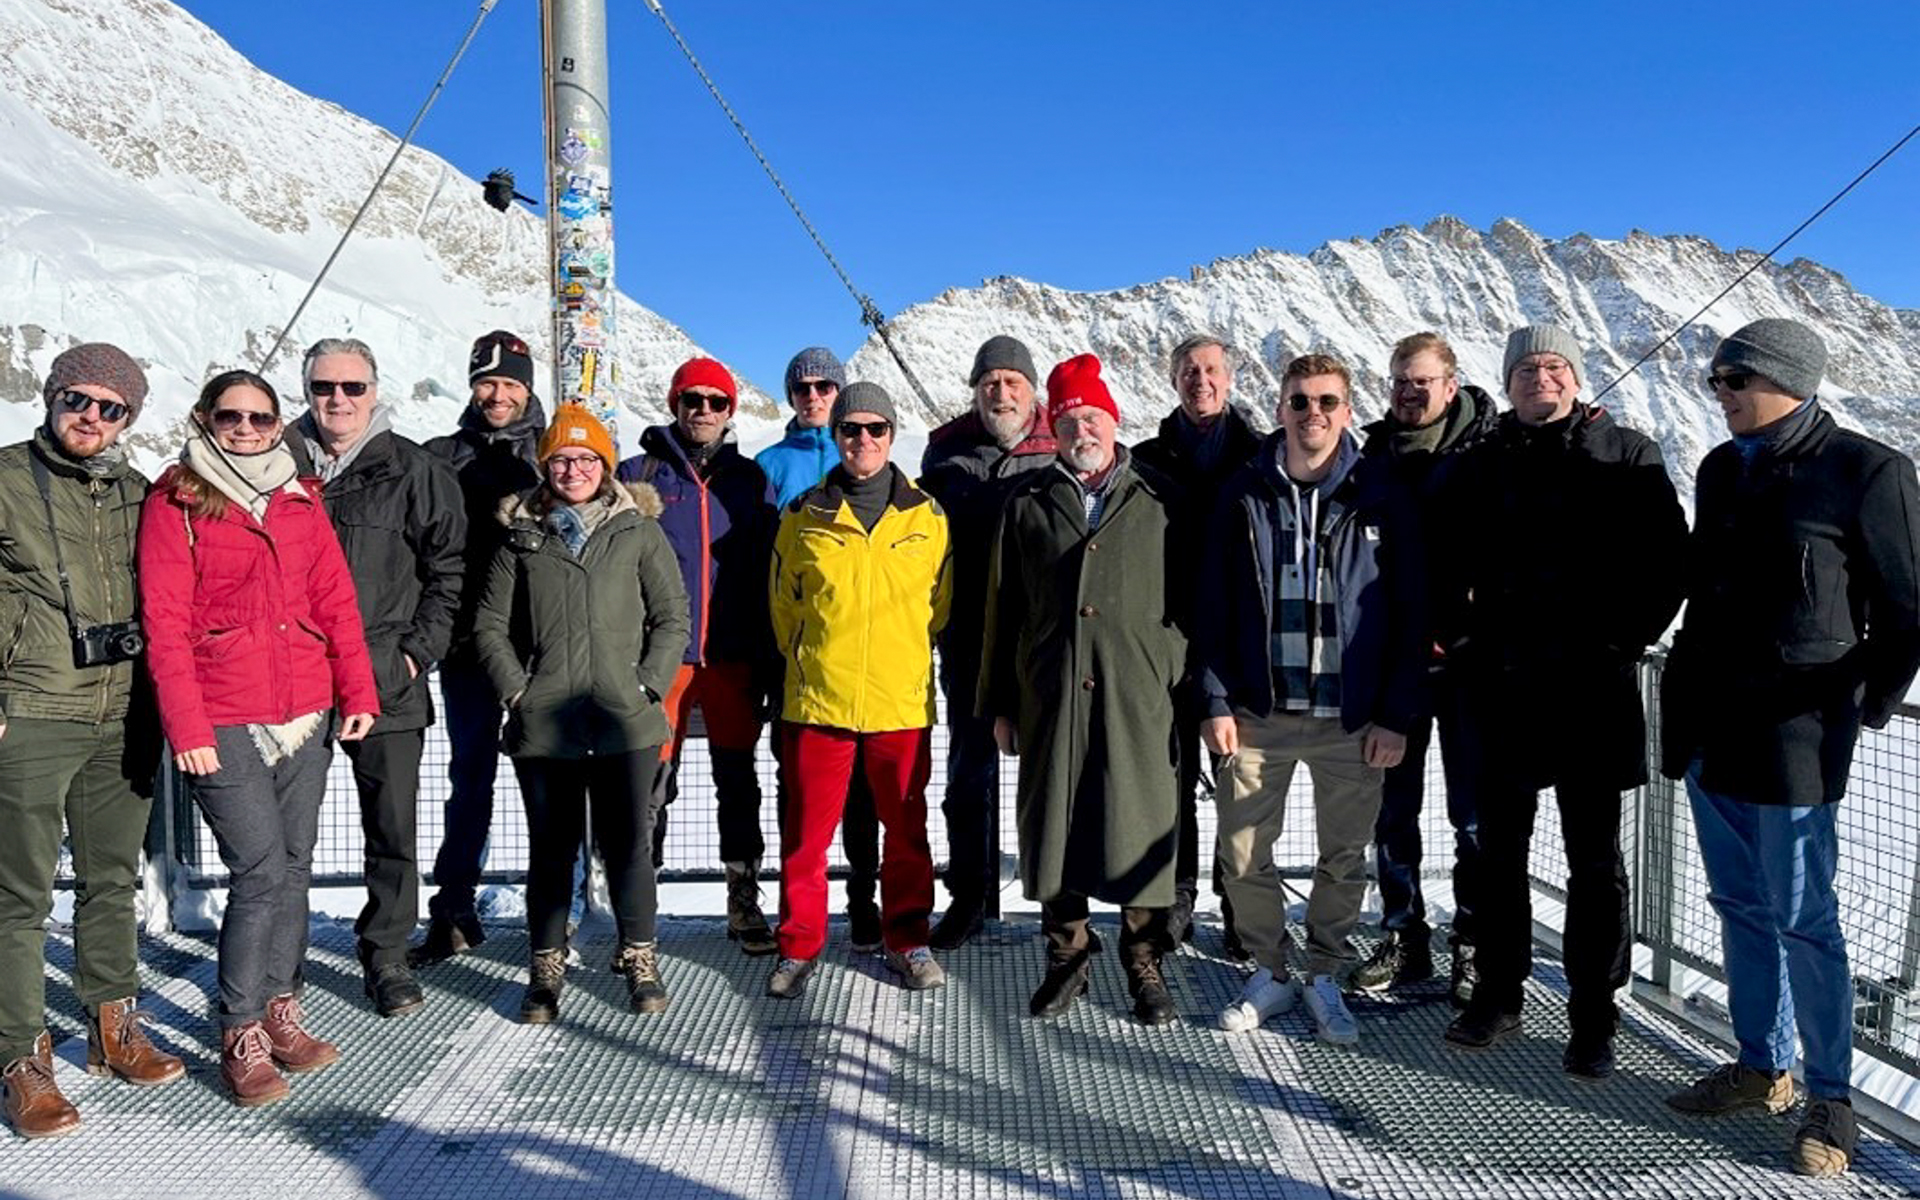 Gruppenfoto der Teilnehmenden des AHORN22 Treffens. Im Hintergrund ist eine Bergkette ersichtlich.